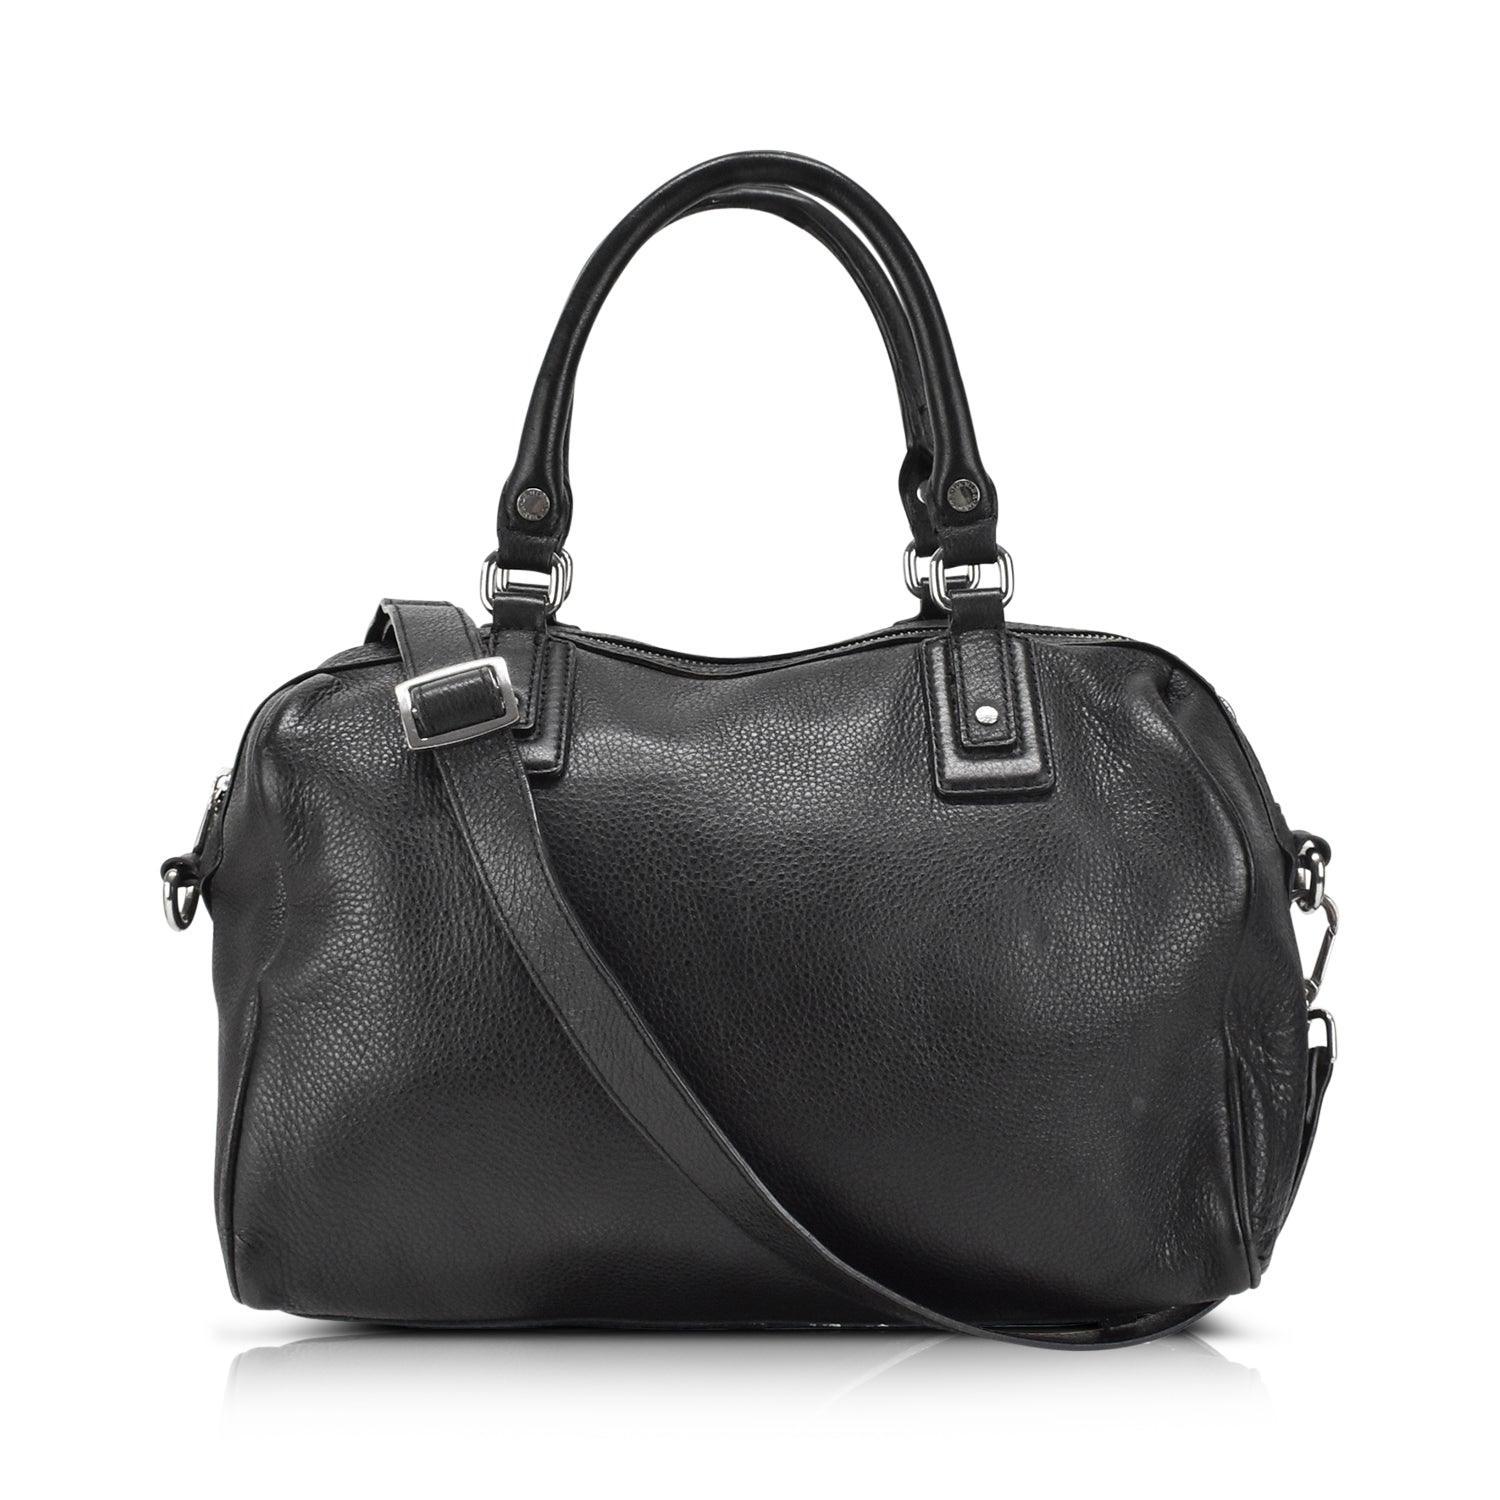 Danier Duffle Bag - Fashionably Yours